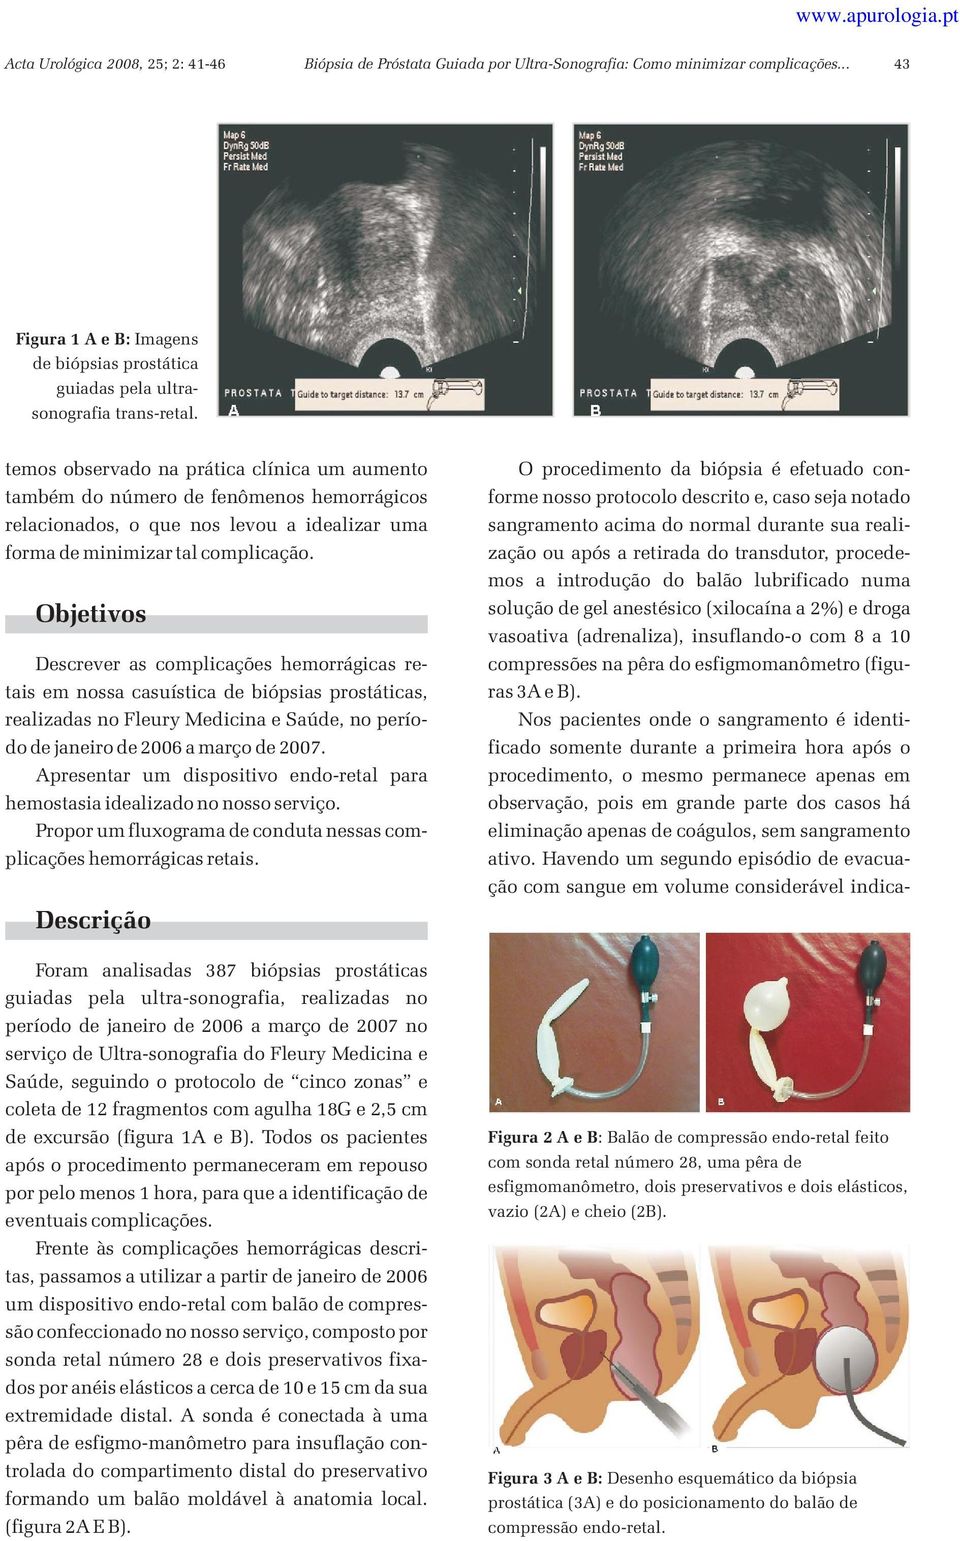 Objetivos Descrever as complicações hemorrágicas retais em nossa casuística de biópsias prostáticas, realizadas no Fleury Medicina e Saúde, no período de janeiro de 2006 a março de 2007.